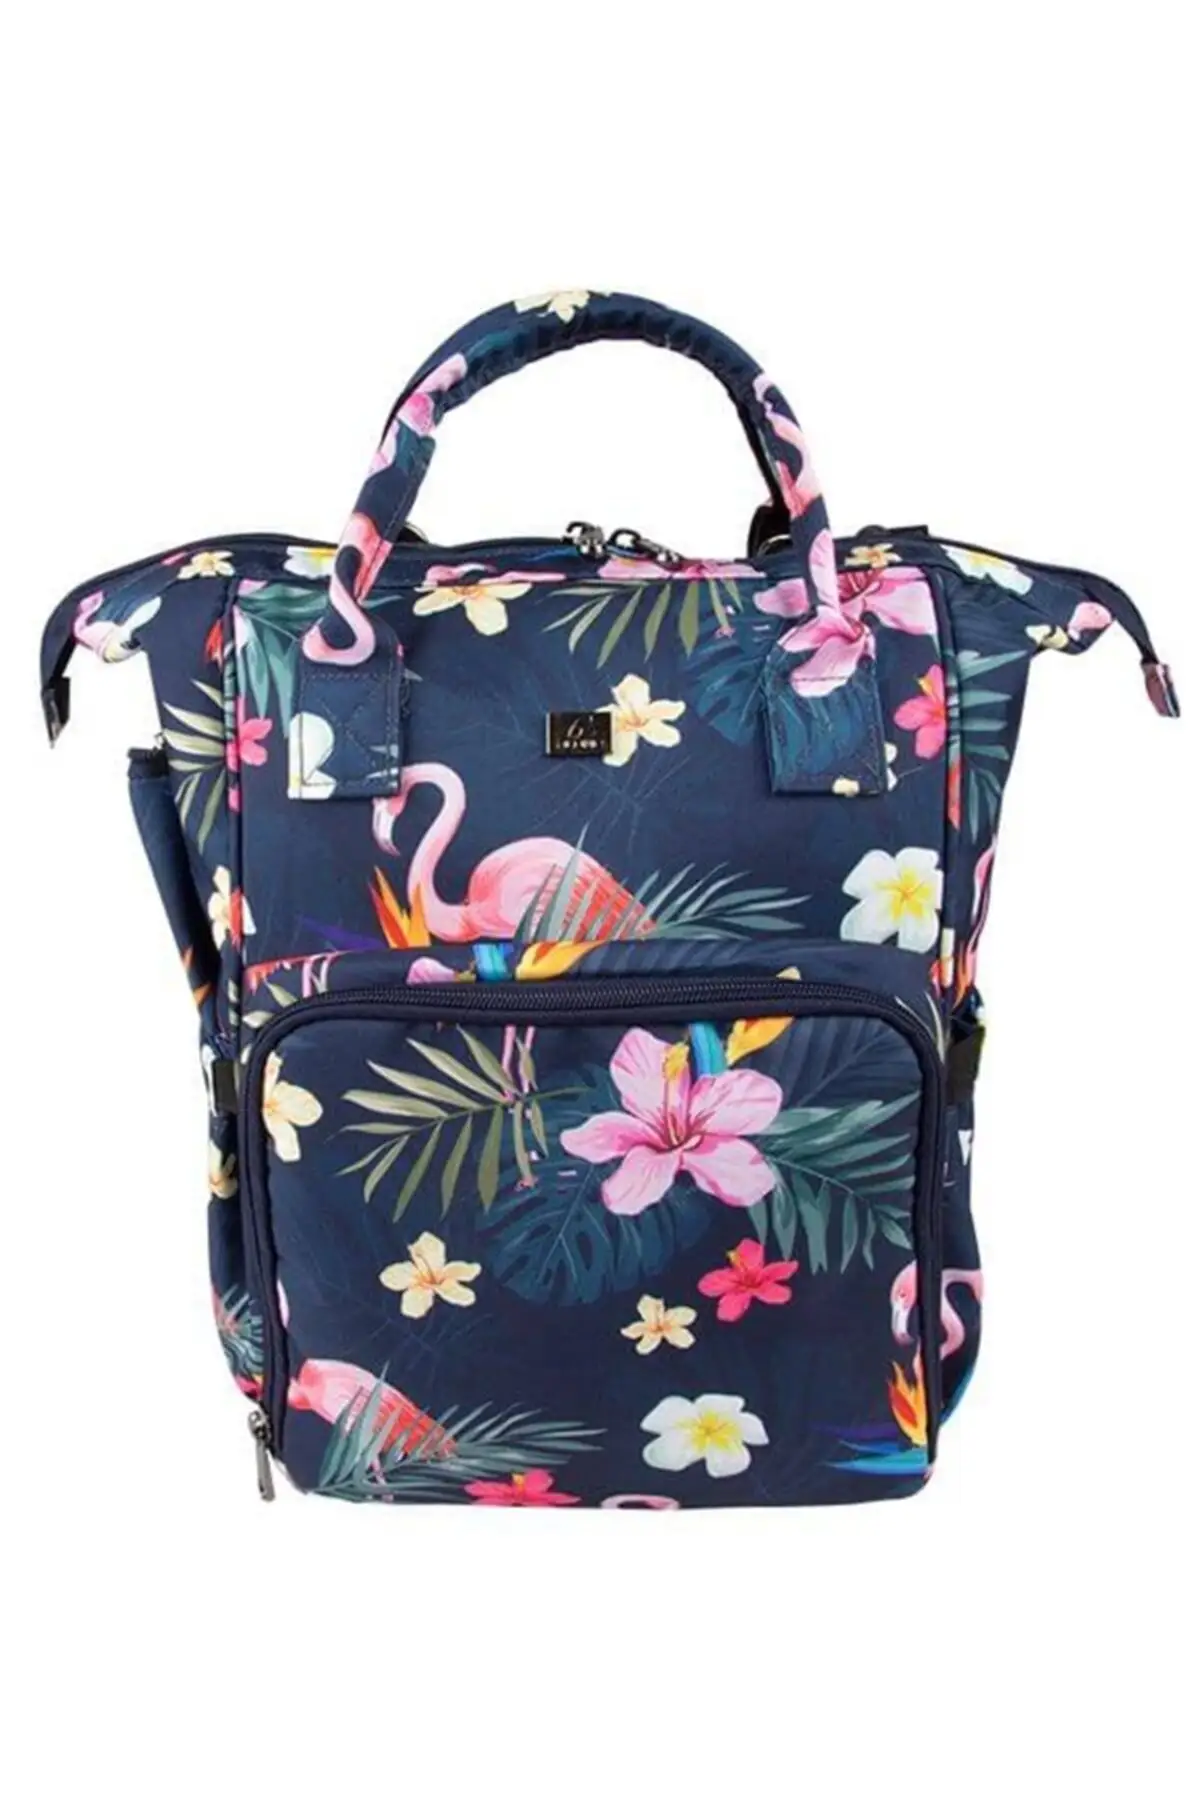 

9305 сумка для малышей с фламинго, крутые детские рюкзаки, сумки, игрушки, светильник кие детские сумки, новое ежедневное использование